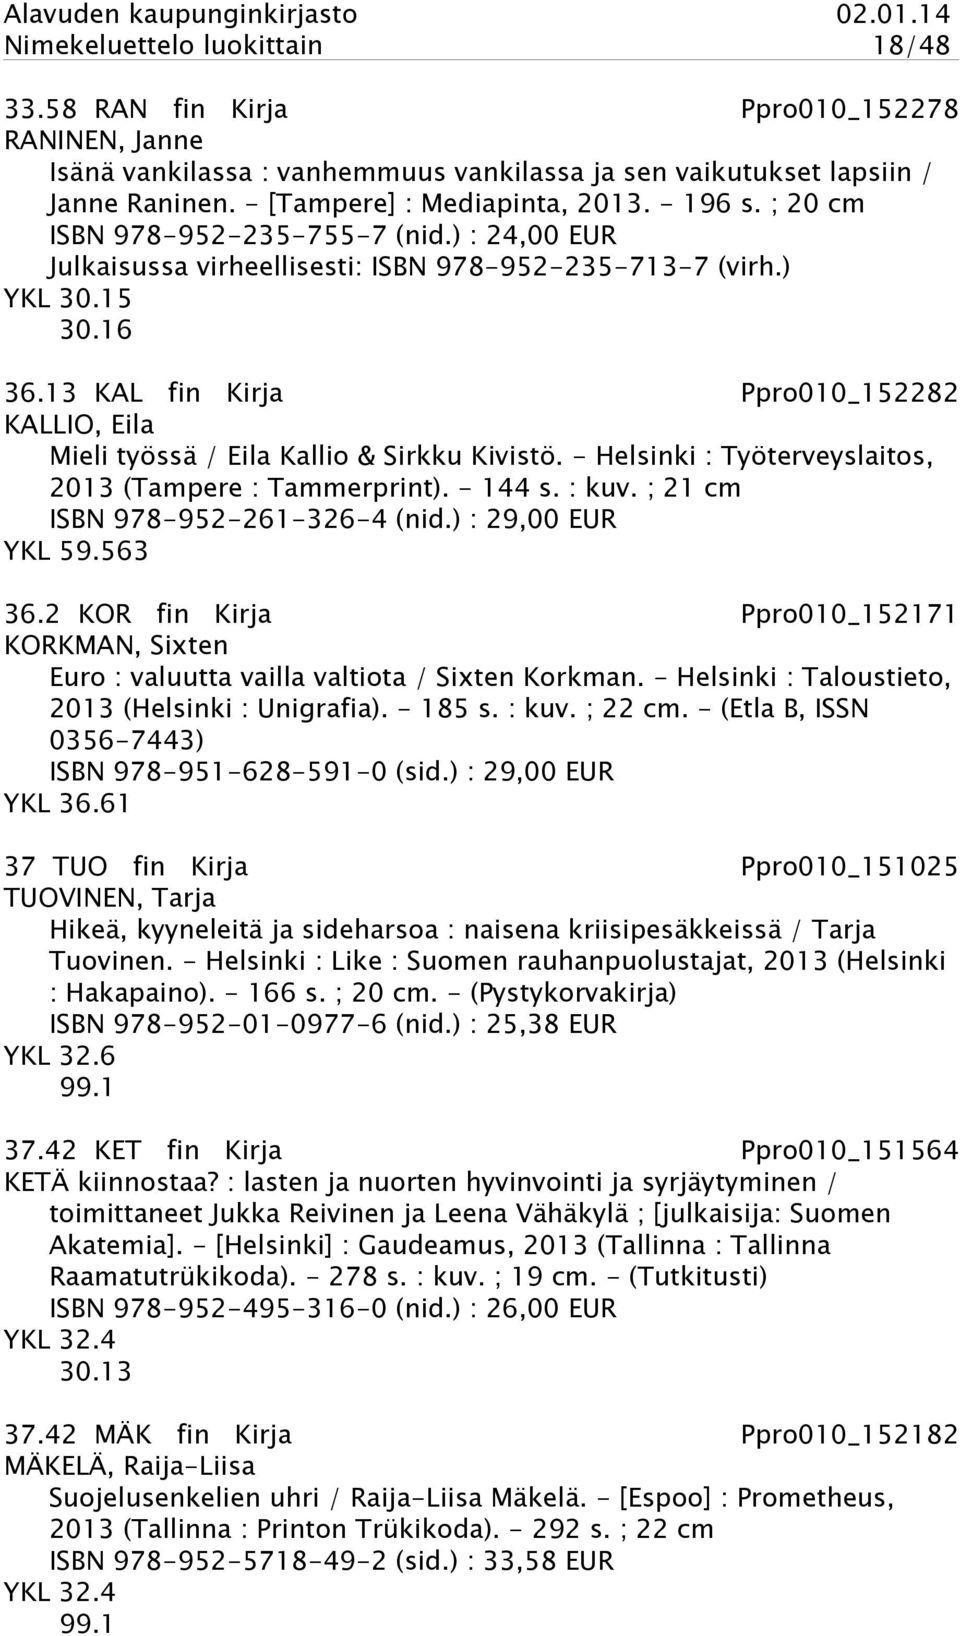 13 KAL fin Kirja Ppro010_152282 KALLIO, Eila Mieli työssä / Eila Kallio & Sirkku Kivistö. - Helsinki : Työterveyslaitos, 2013 (Tampere : Tammerprint). - 144 s. : kuv.